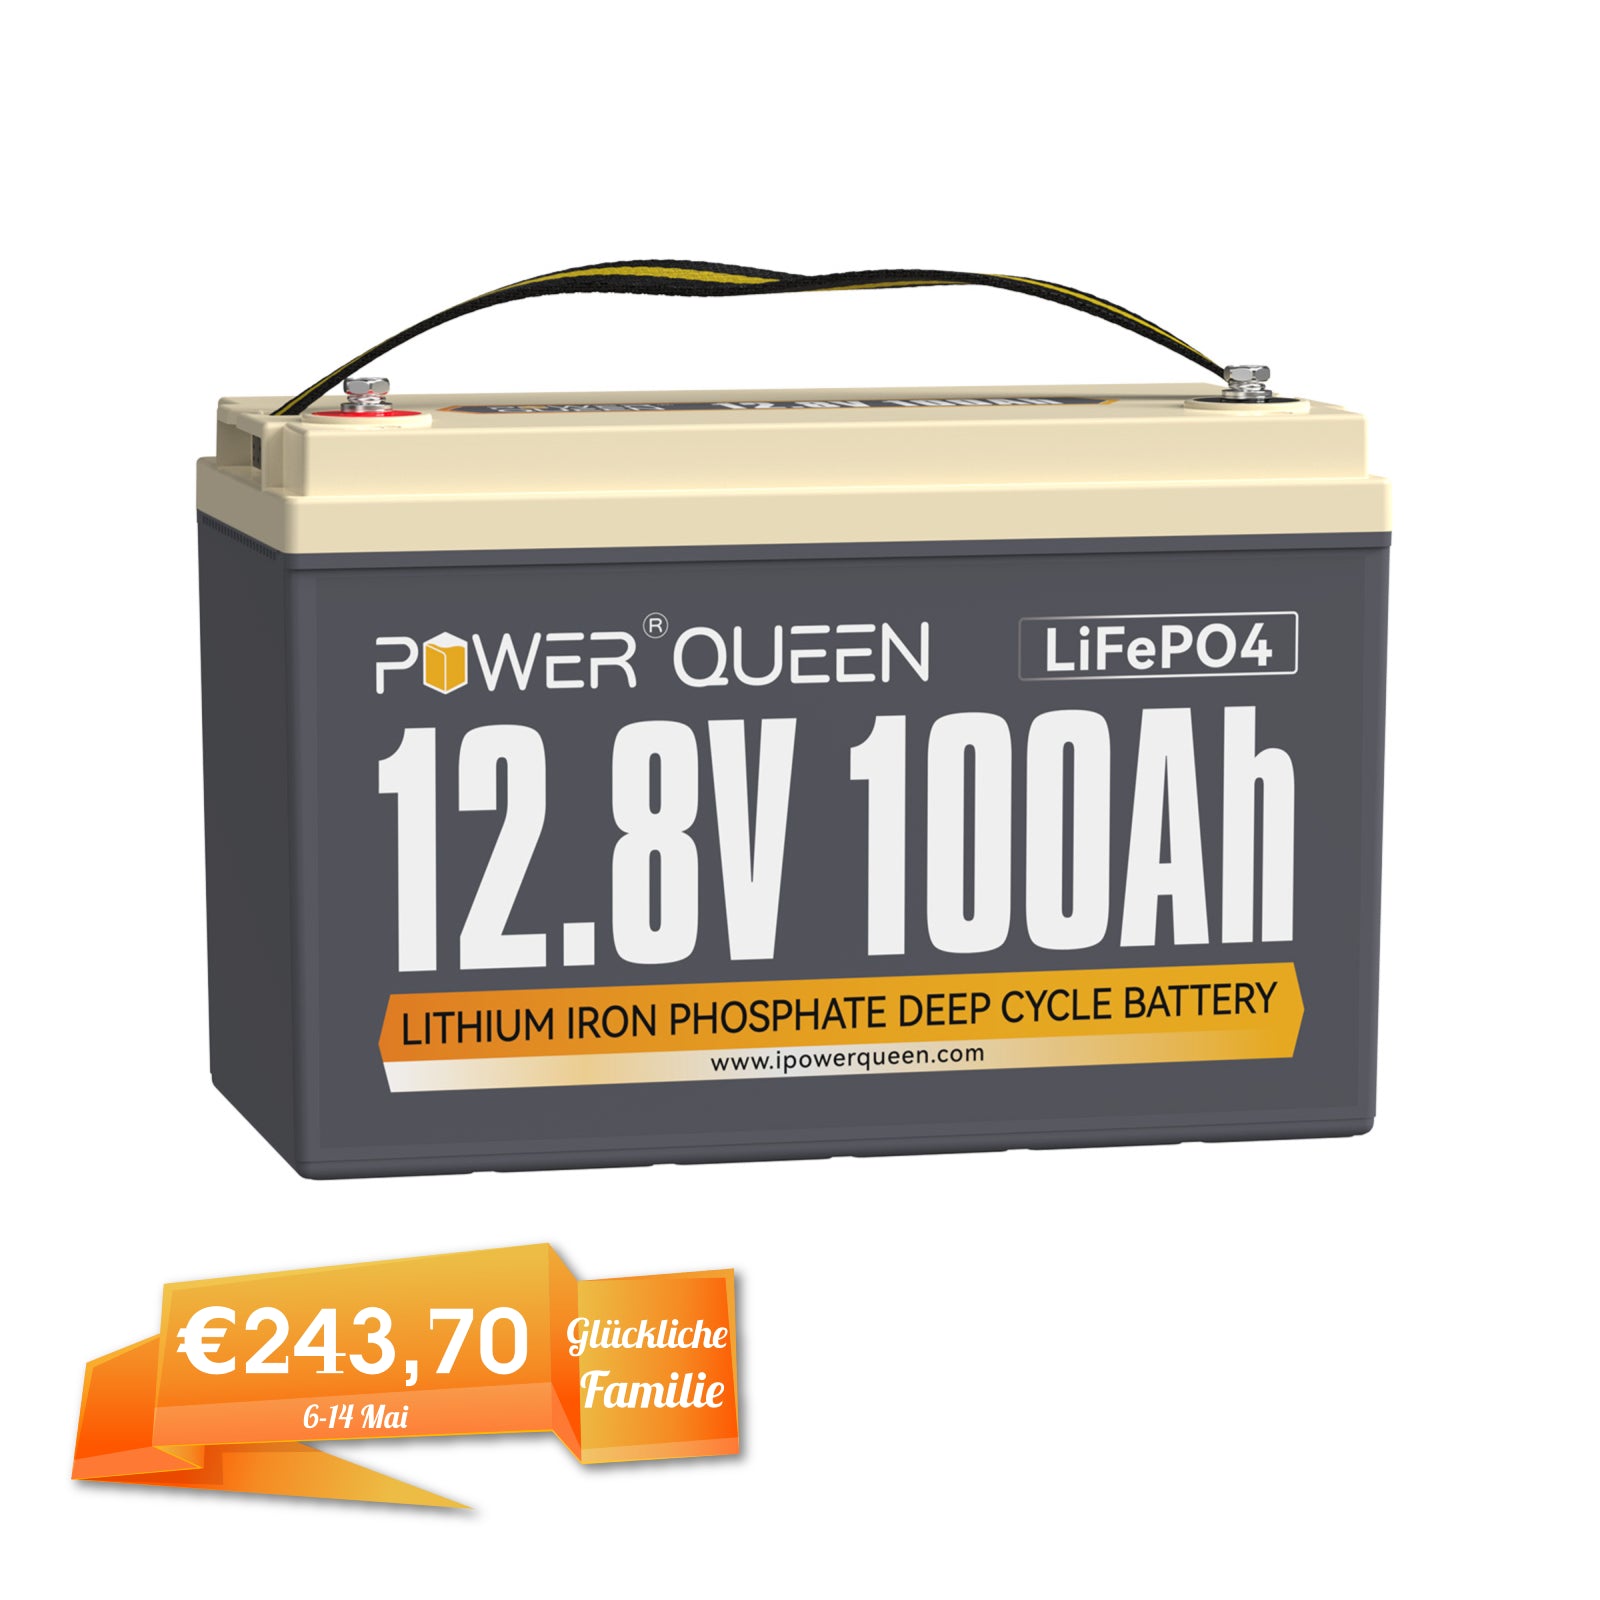 【0% IVA】Batería Power Queen 12V 100Ah LiFePO4, BMS 100A incorporado